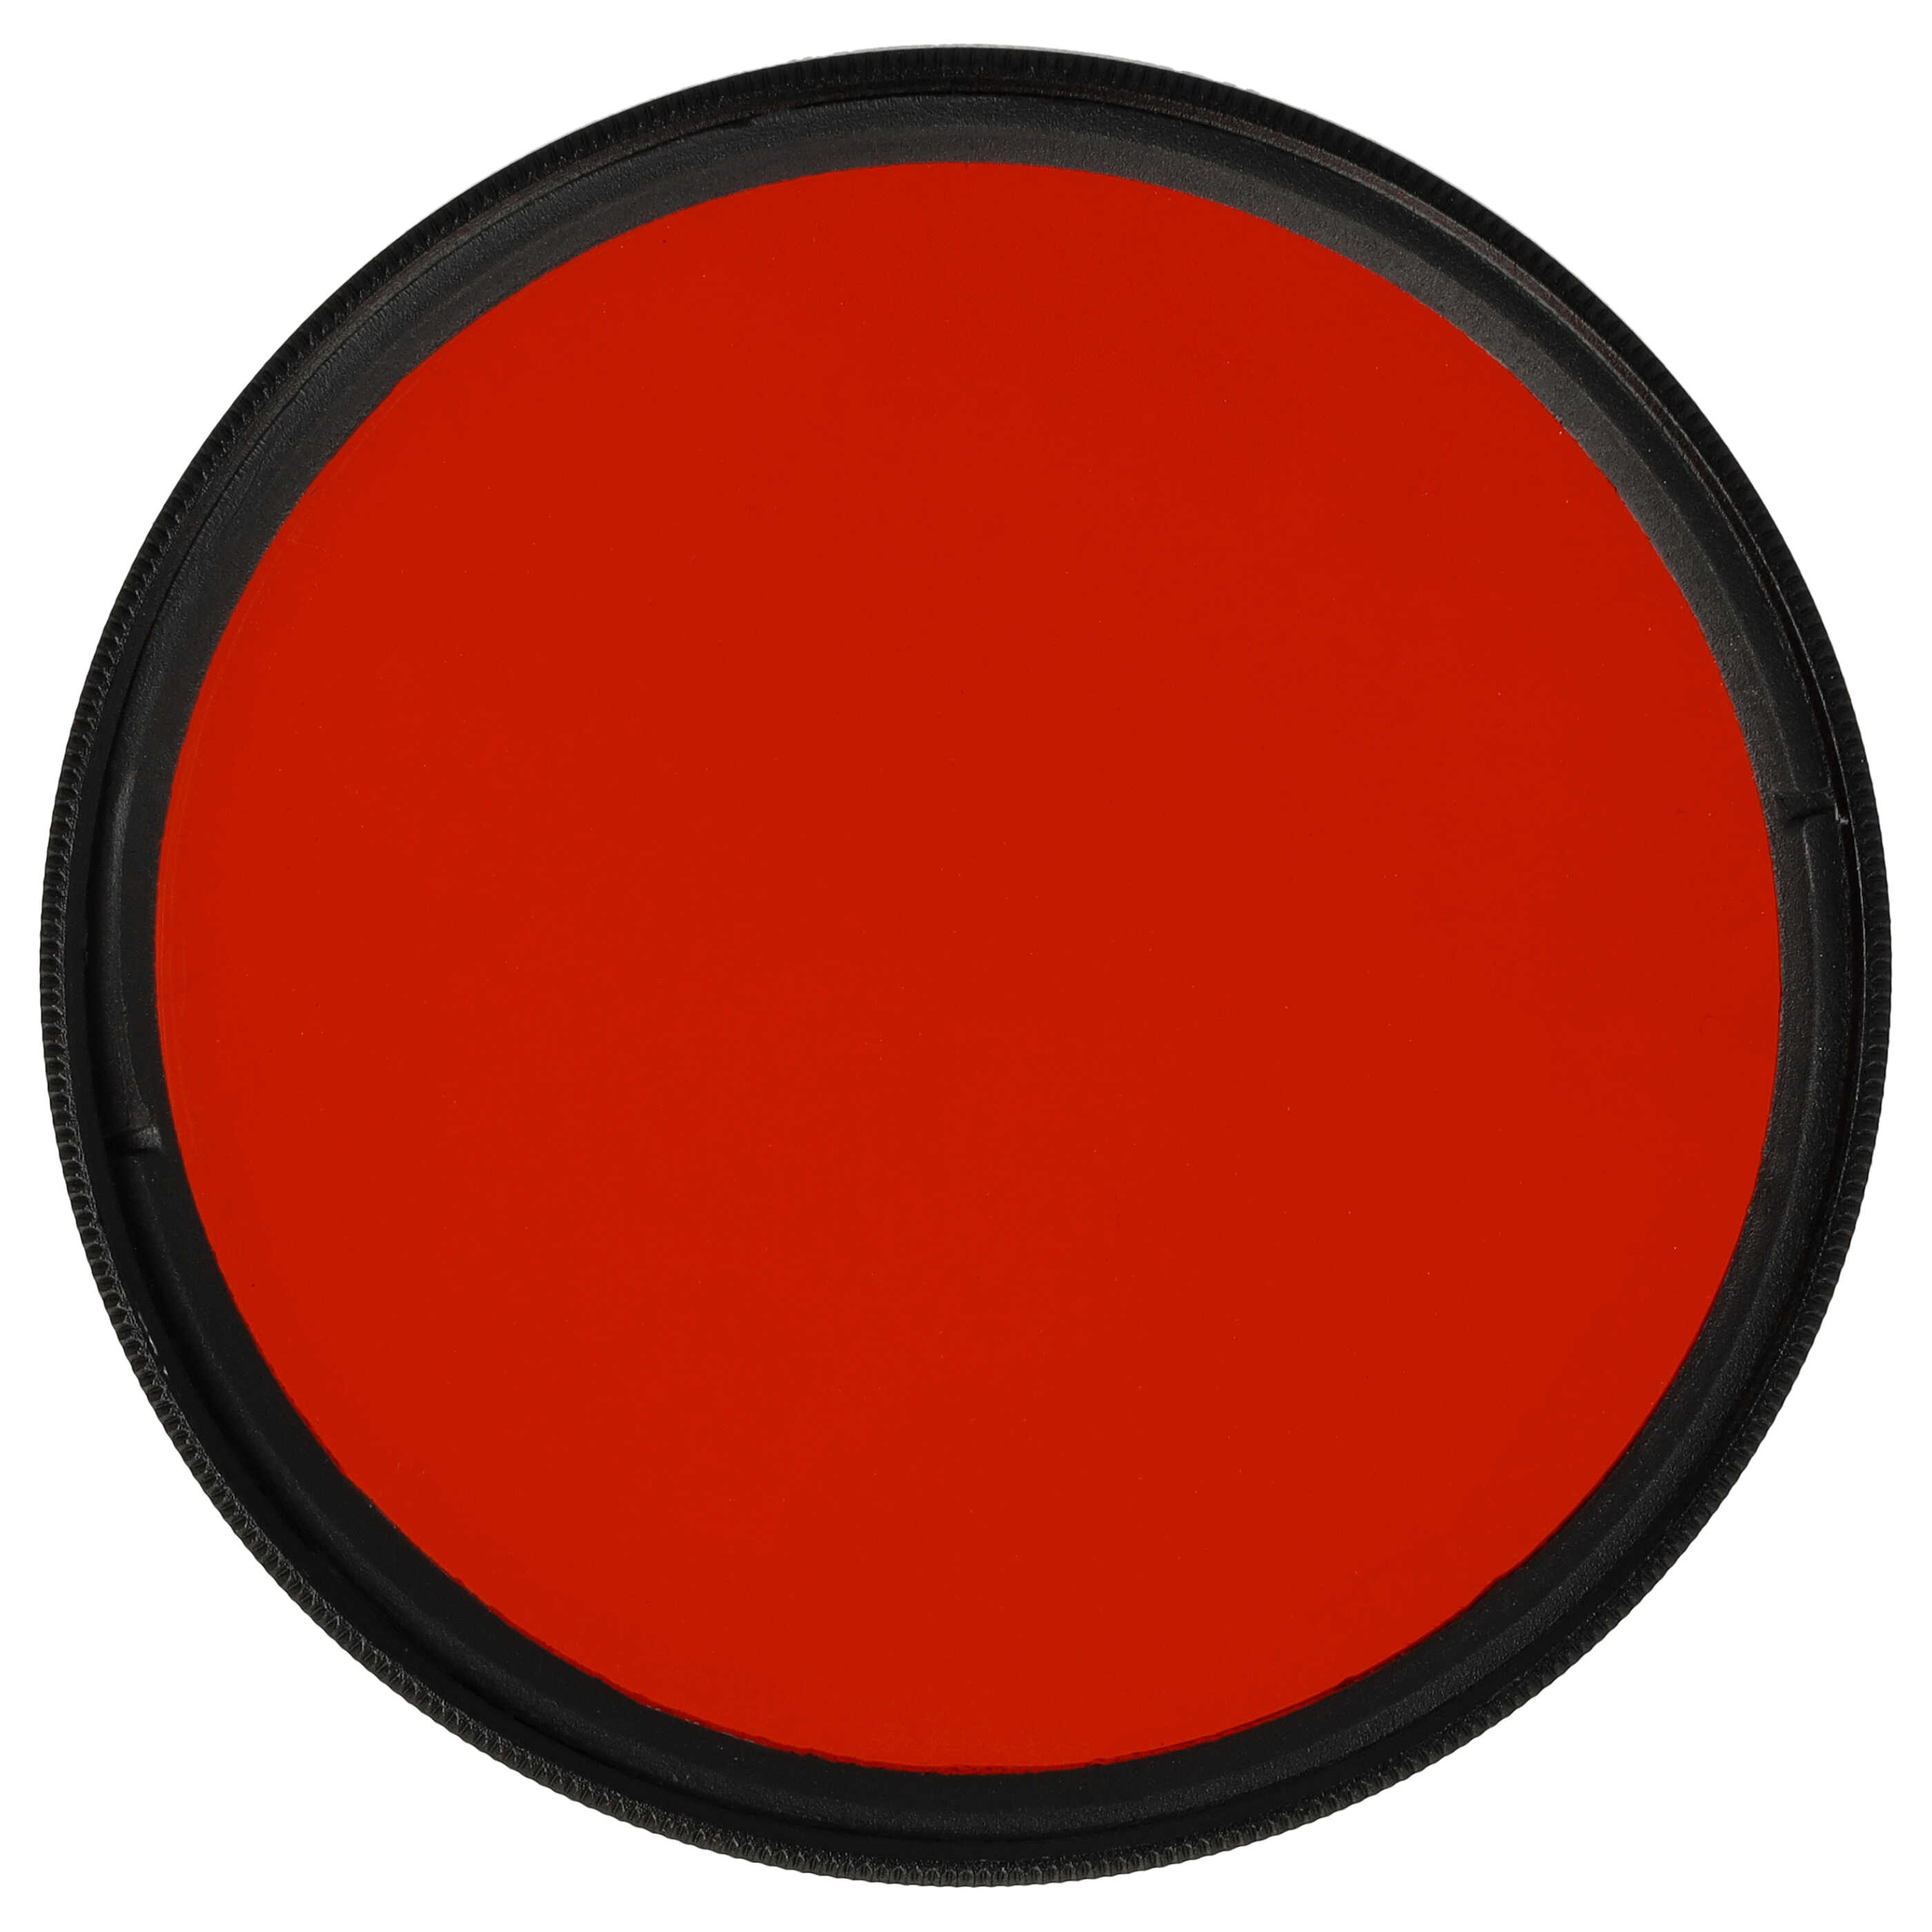 Filtro de color para objetivo de cámara con rosca de filtro de 62 mm - Filtro naranja